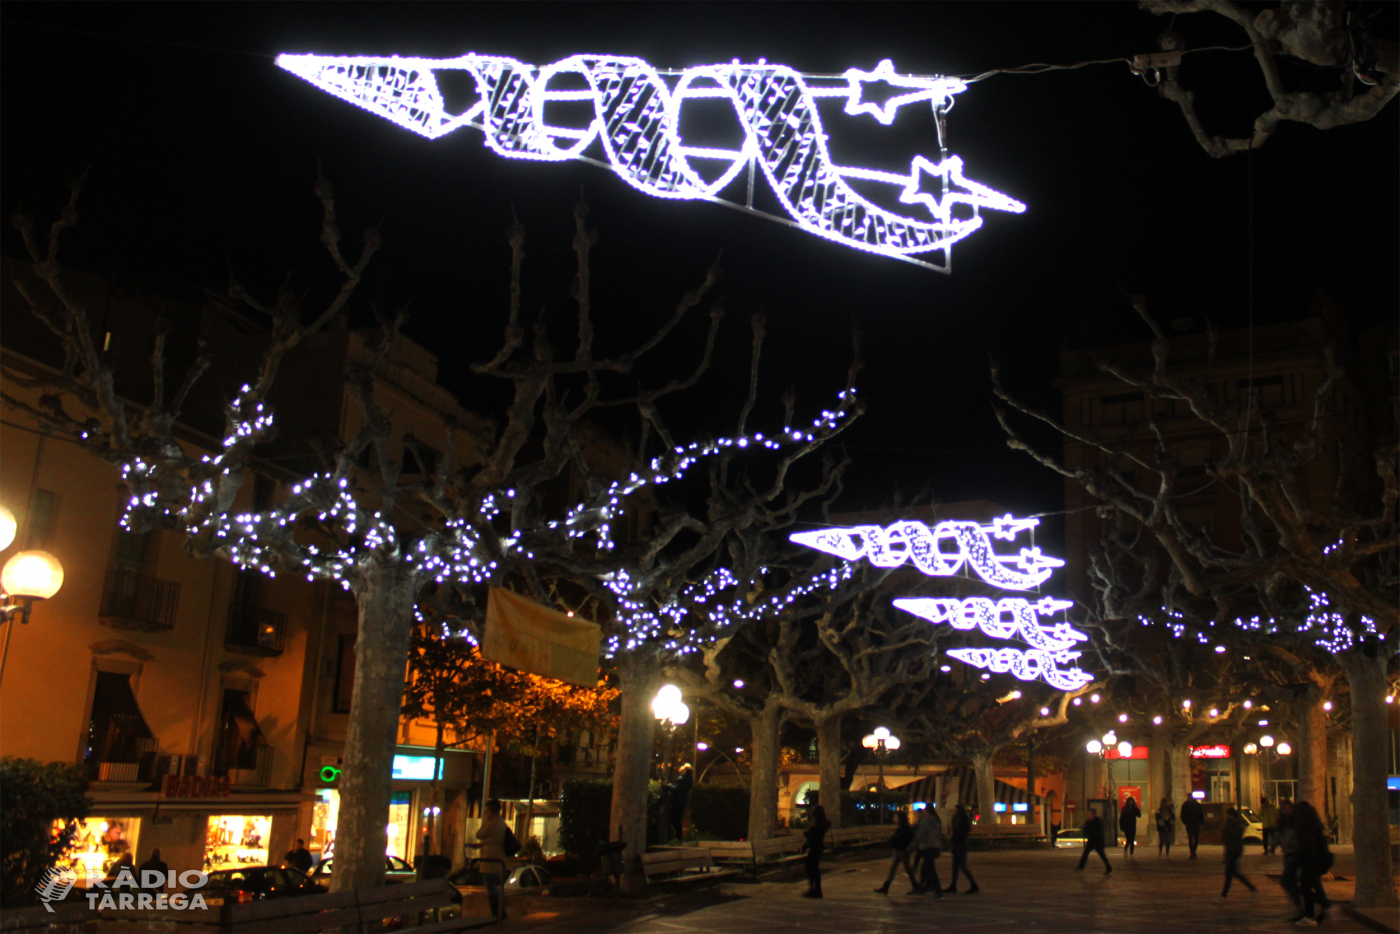 L'Ajuntament de Tàrrega anuncia que es farà càrrec de la instal·lació de l’enllumenat de Nadal dels carrers de la ciutat aquest any